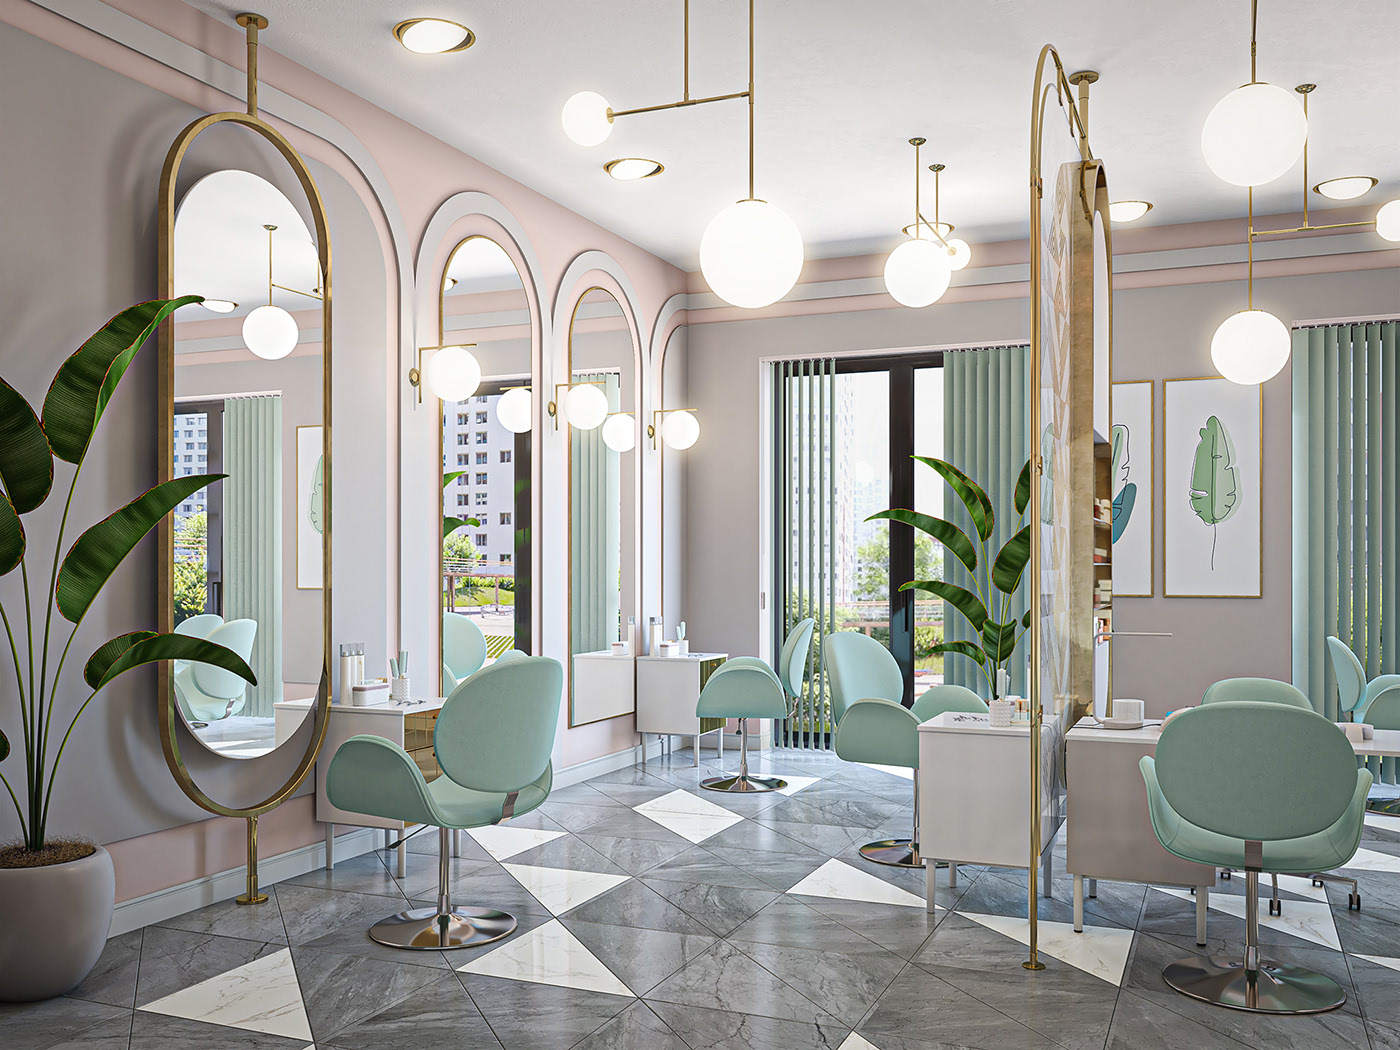 Thiết kế beauty salon hiện đại, cao cấp nhất năm 2020